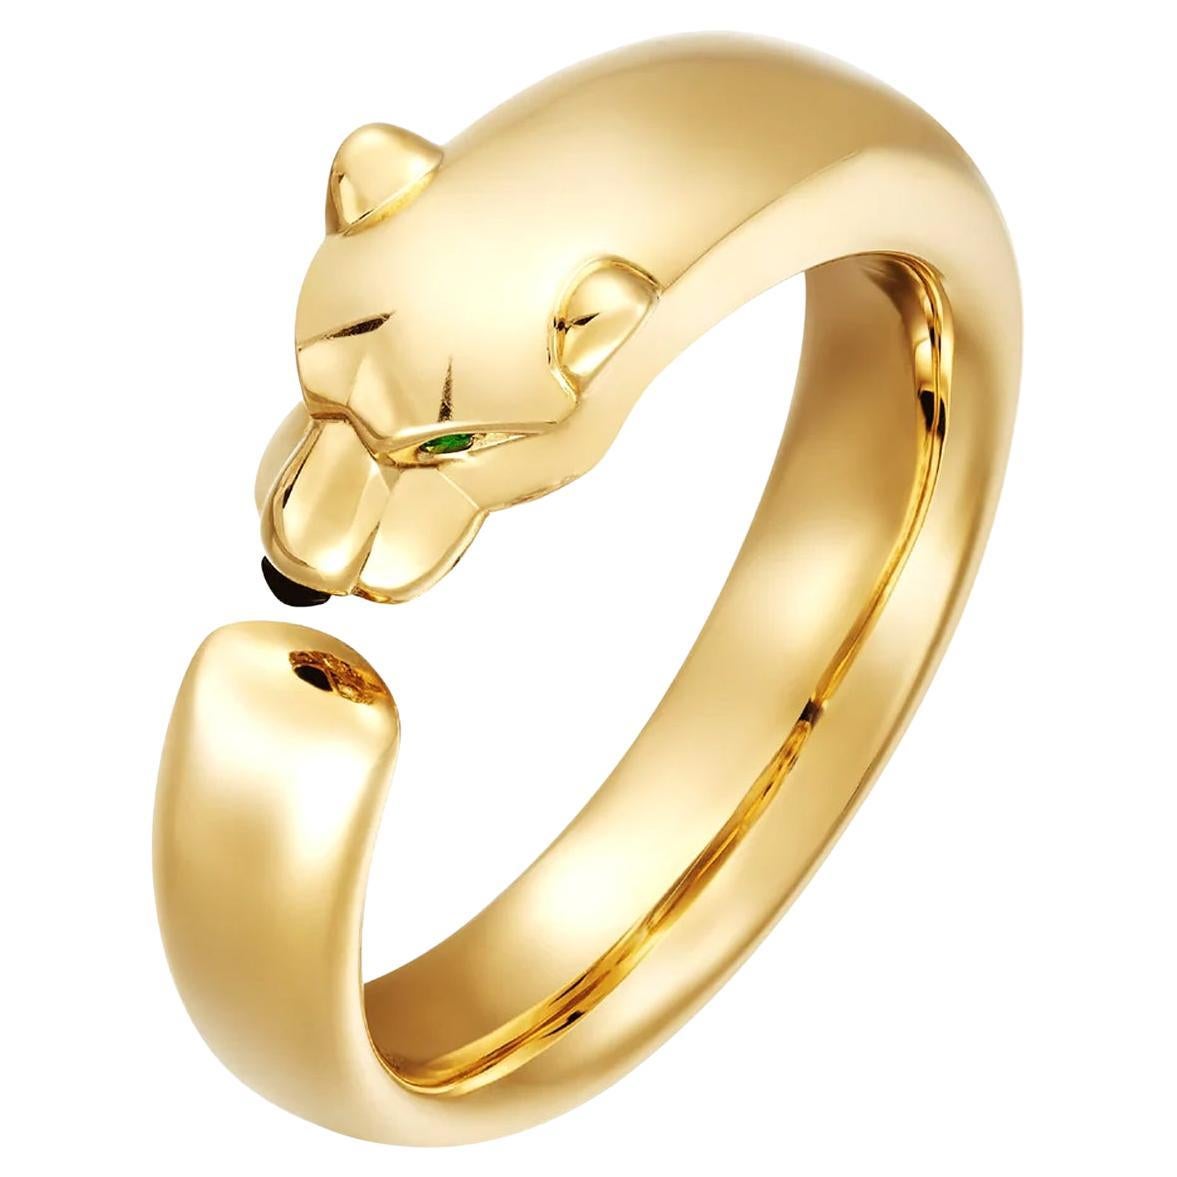 Cartier Panthère De Cartier Tsavorite Garnets Onyx 18k Yellow Gold Ring